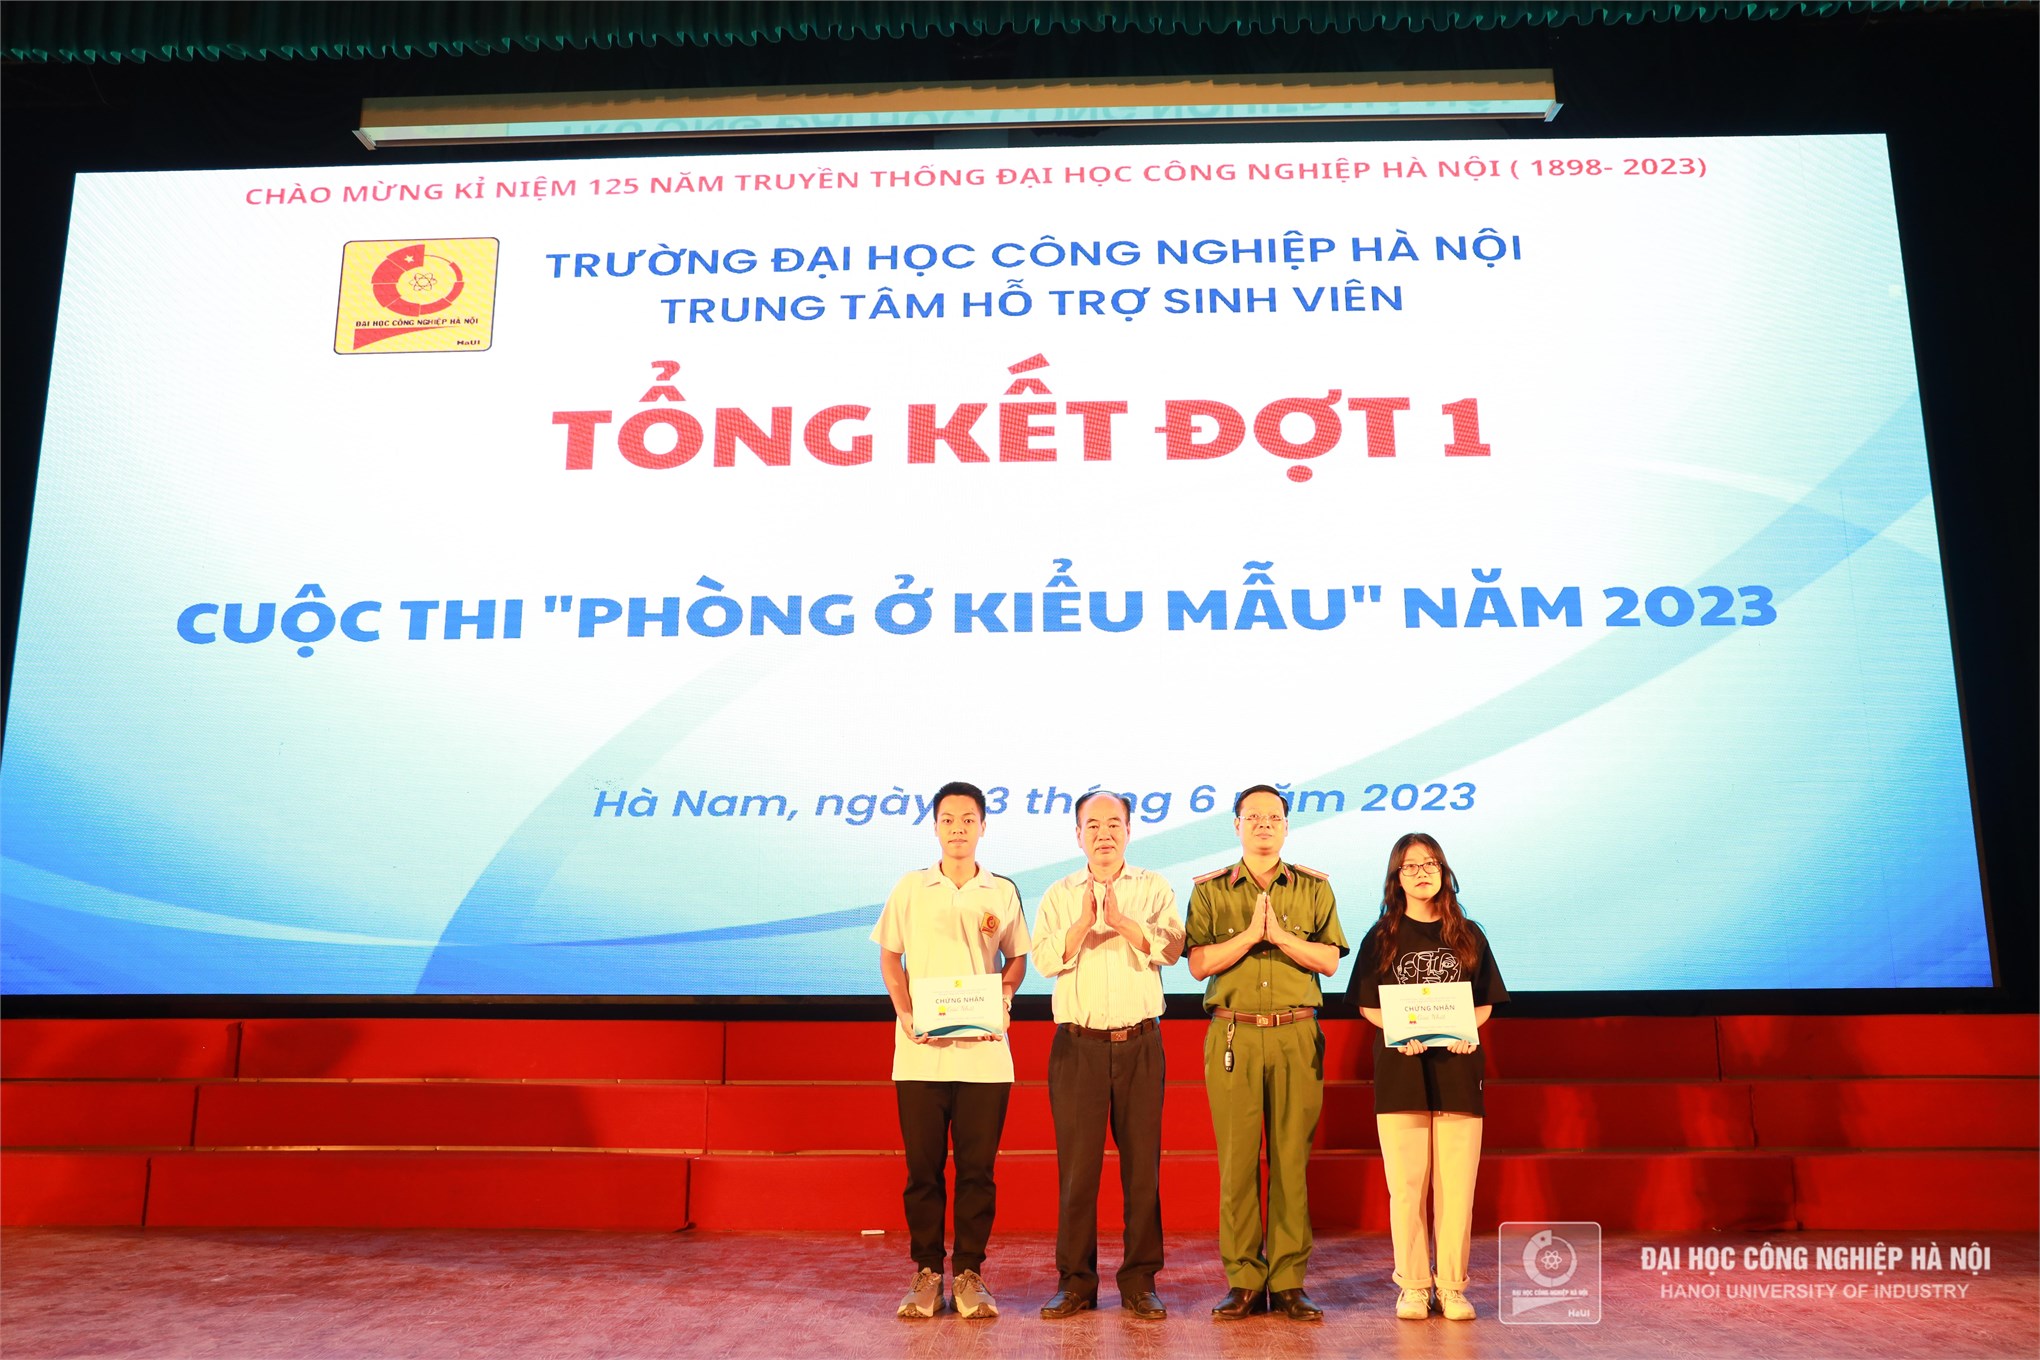 Sinh viên Trường Ngoại ngữ - Du lịch, Trường Đại học Công nghiệp Hà Nội đạt giải Nhất Chương trình “Sinh viên với công tác phòng, chống ma túy